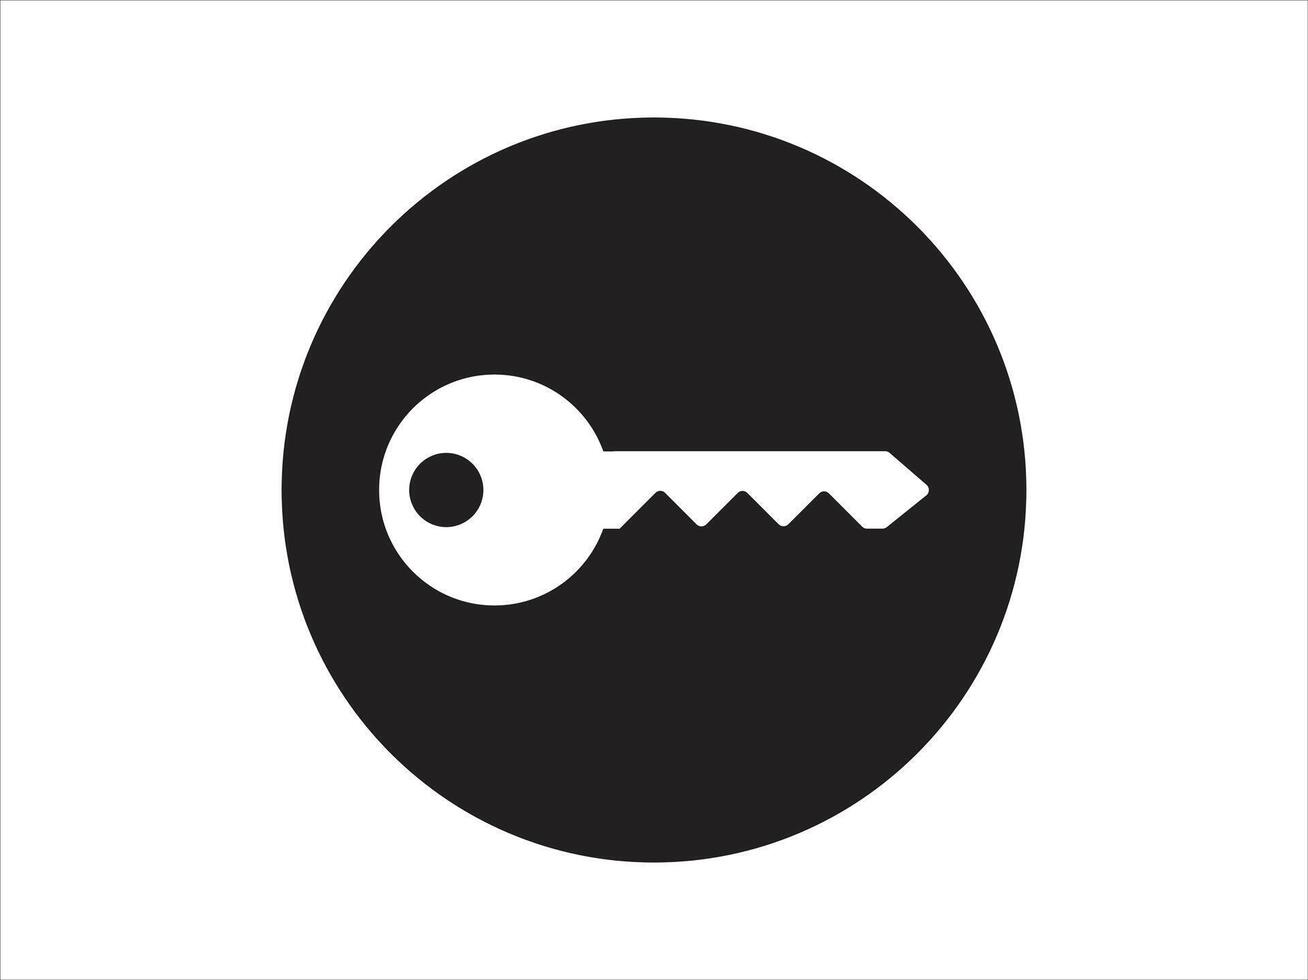 Schlüssel Symbol. Sammlung von Vektor Symbol auf Weiß Hintergrund. Vektor Illustration.